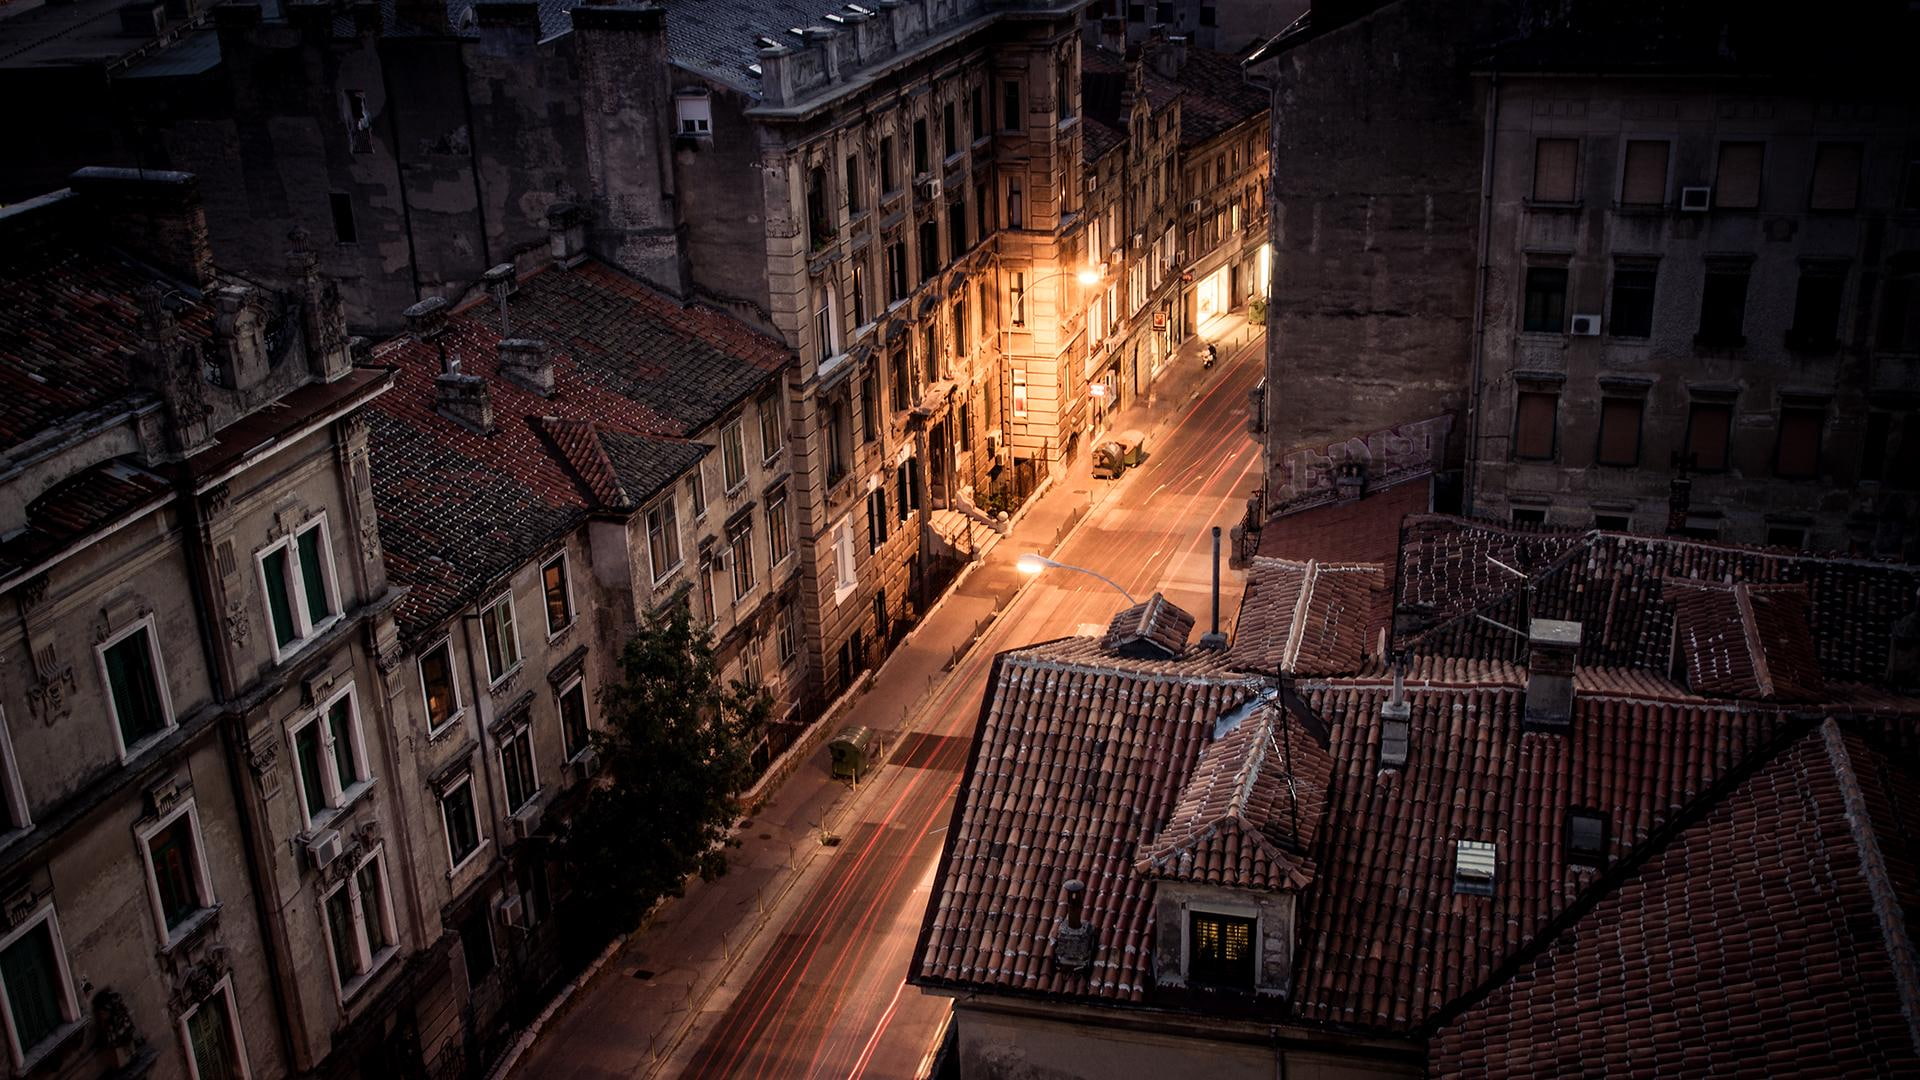 Strossmayer Street In Rijeka Croatia At Night, lights, roofs